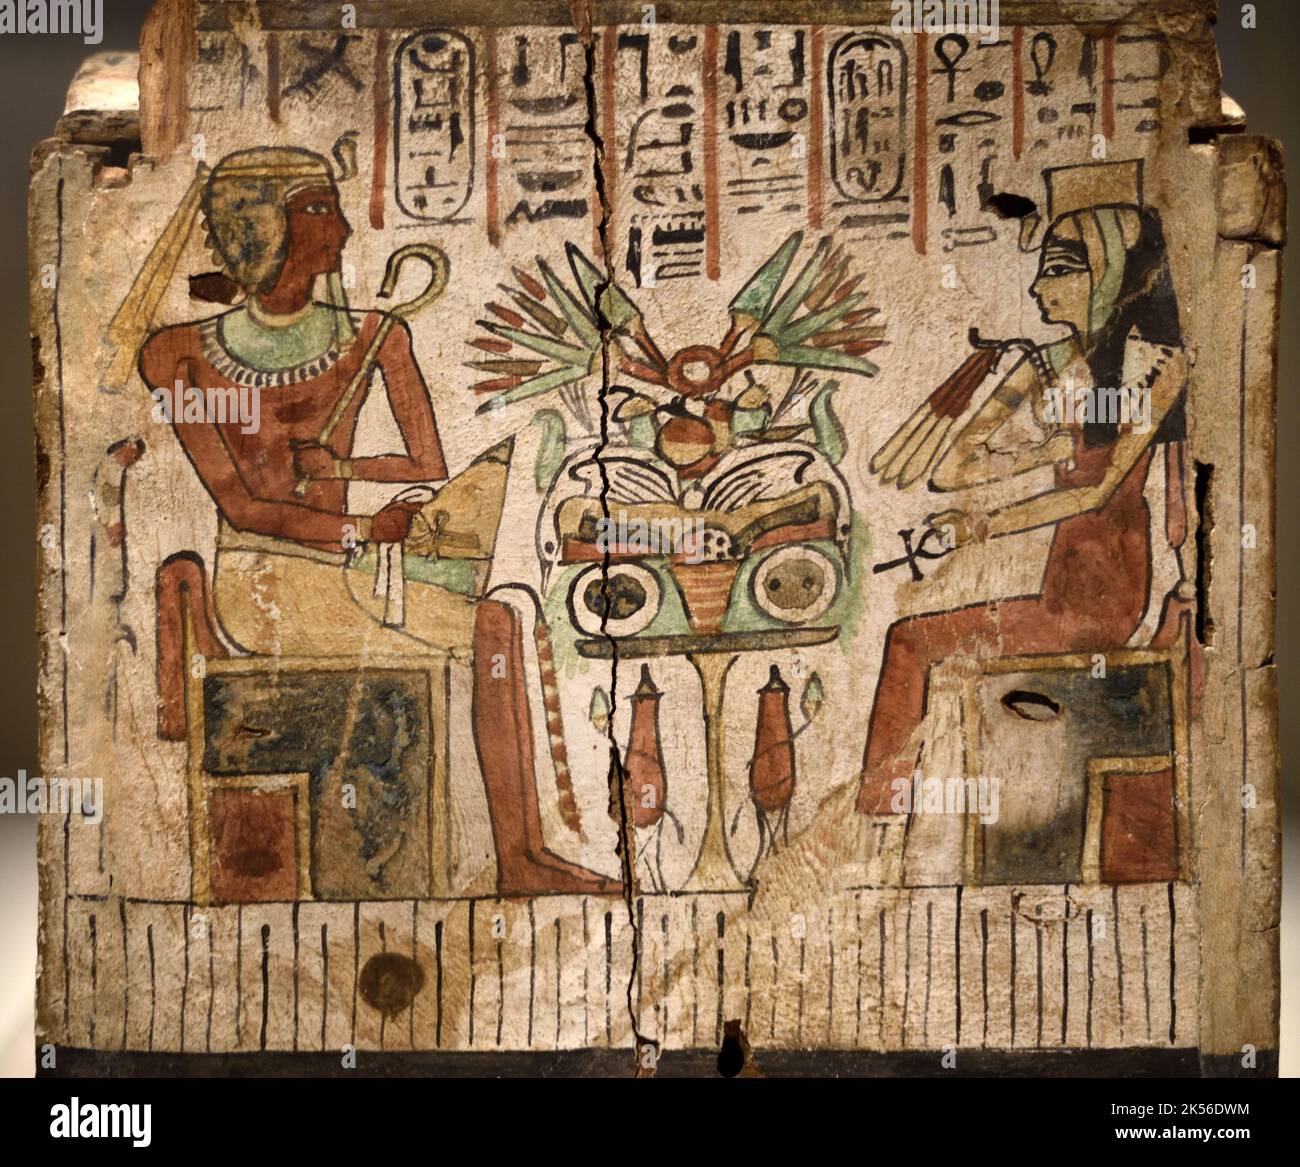 Bara di legno o scatola con illustrazione del faraone Amenhotep 1 e sua madre regina Ahmose Nefertary c 11th-8thAD Antico Egitto Foto Stock